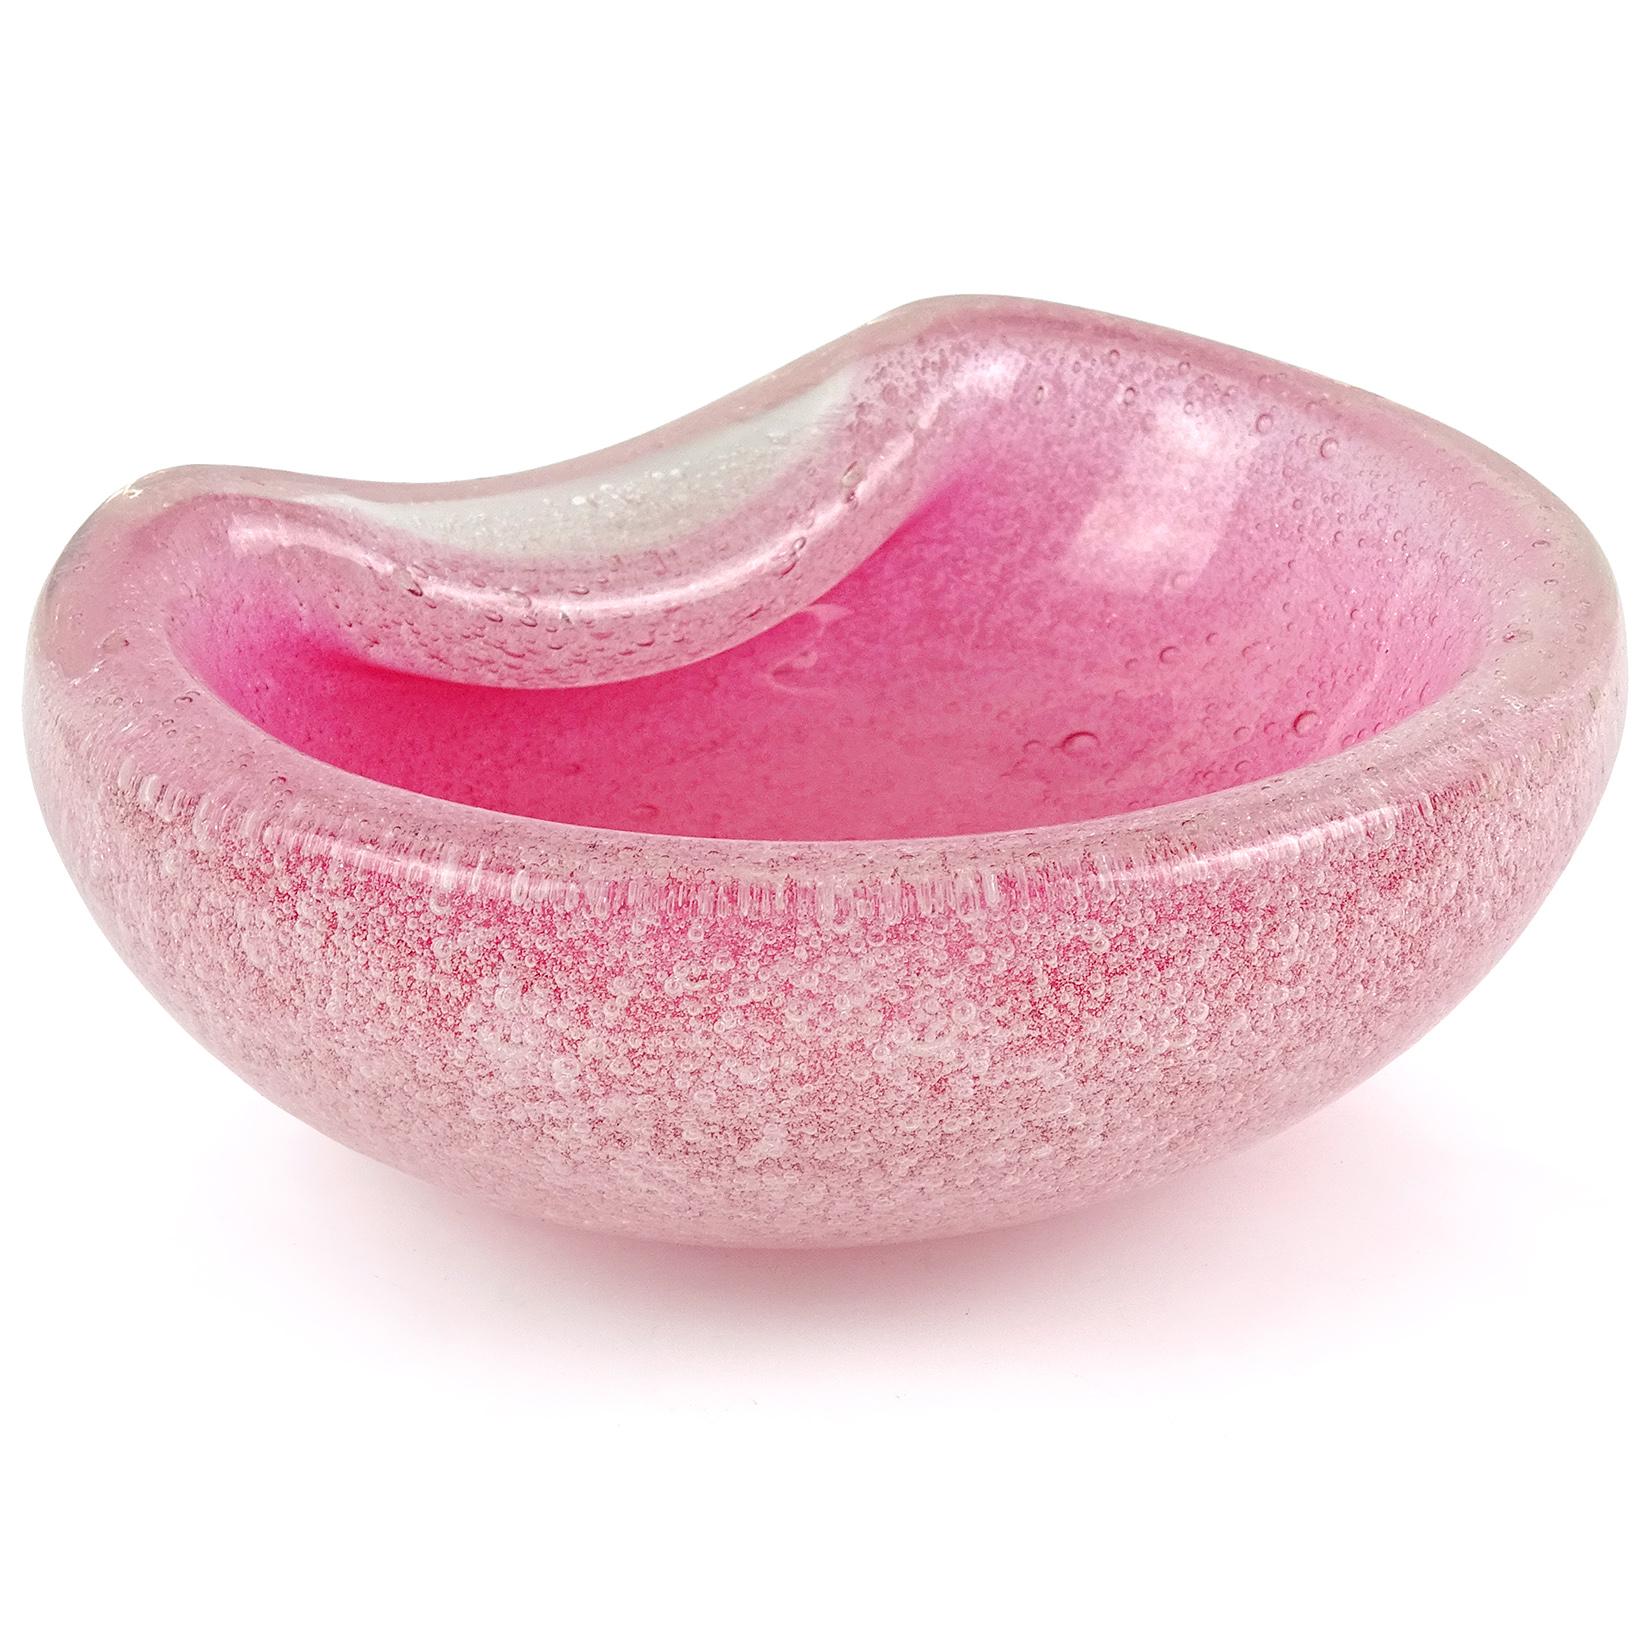 Hand-Crafted Murano Pink Pulegoso Bubbles Technique Italian Art Glass Bowl Vide Poche Dish